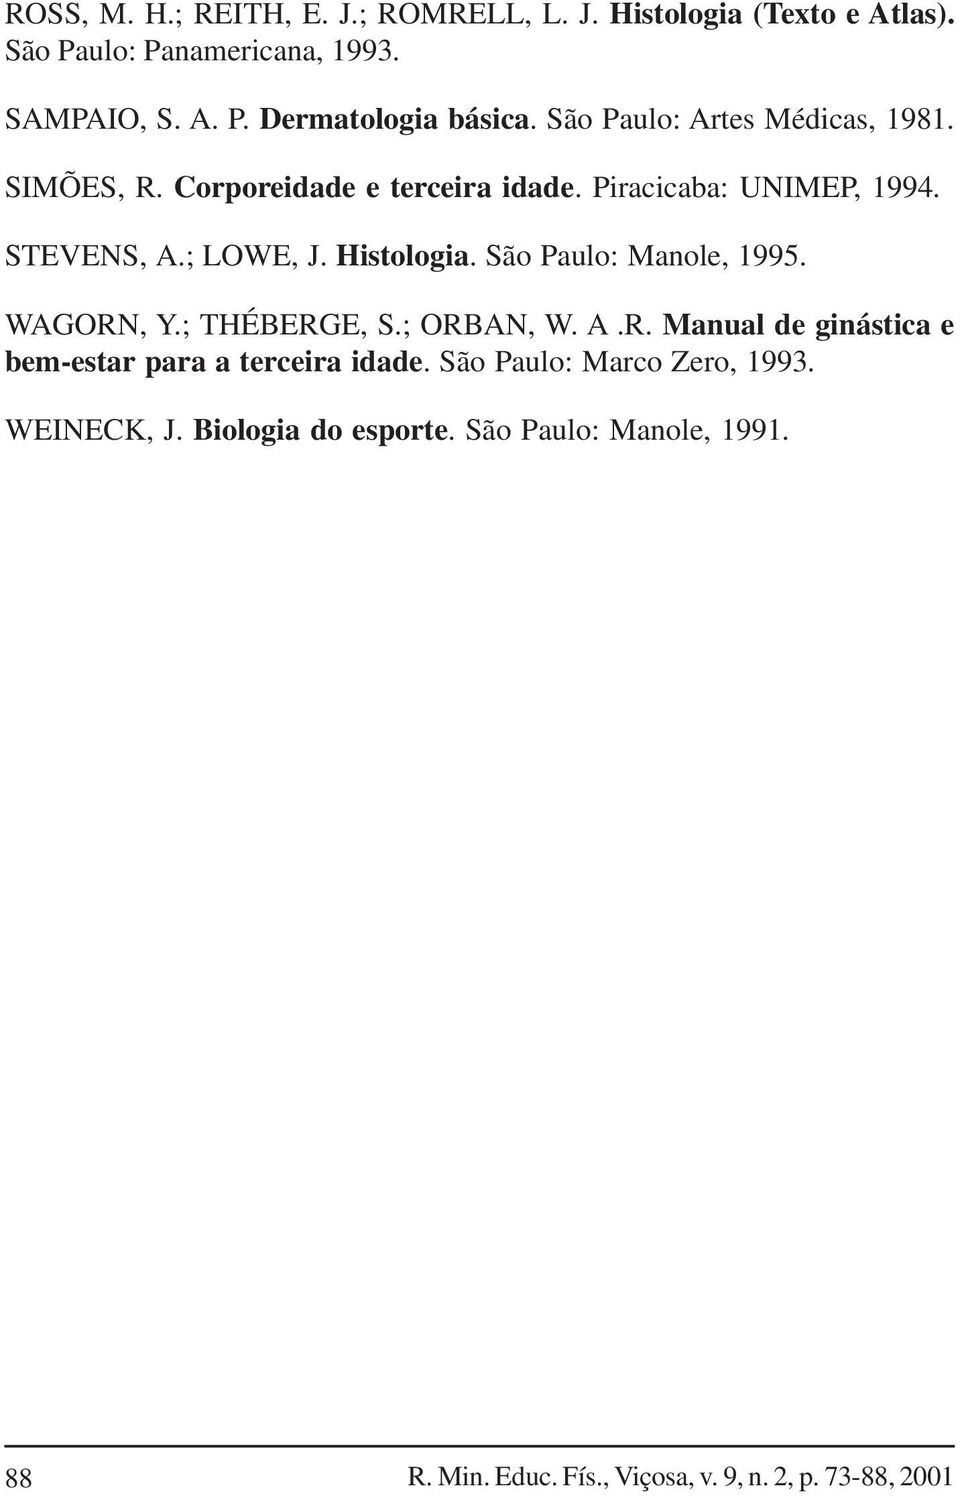 São Paulo: Manole, 1995. WAGORN, Y.; THÉBERGE, S.; ORBAN, W. A.R. Manual de ginástica e bem-estar para a terceira idade.